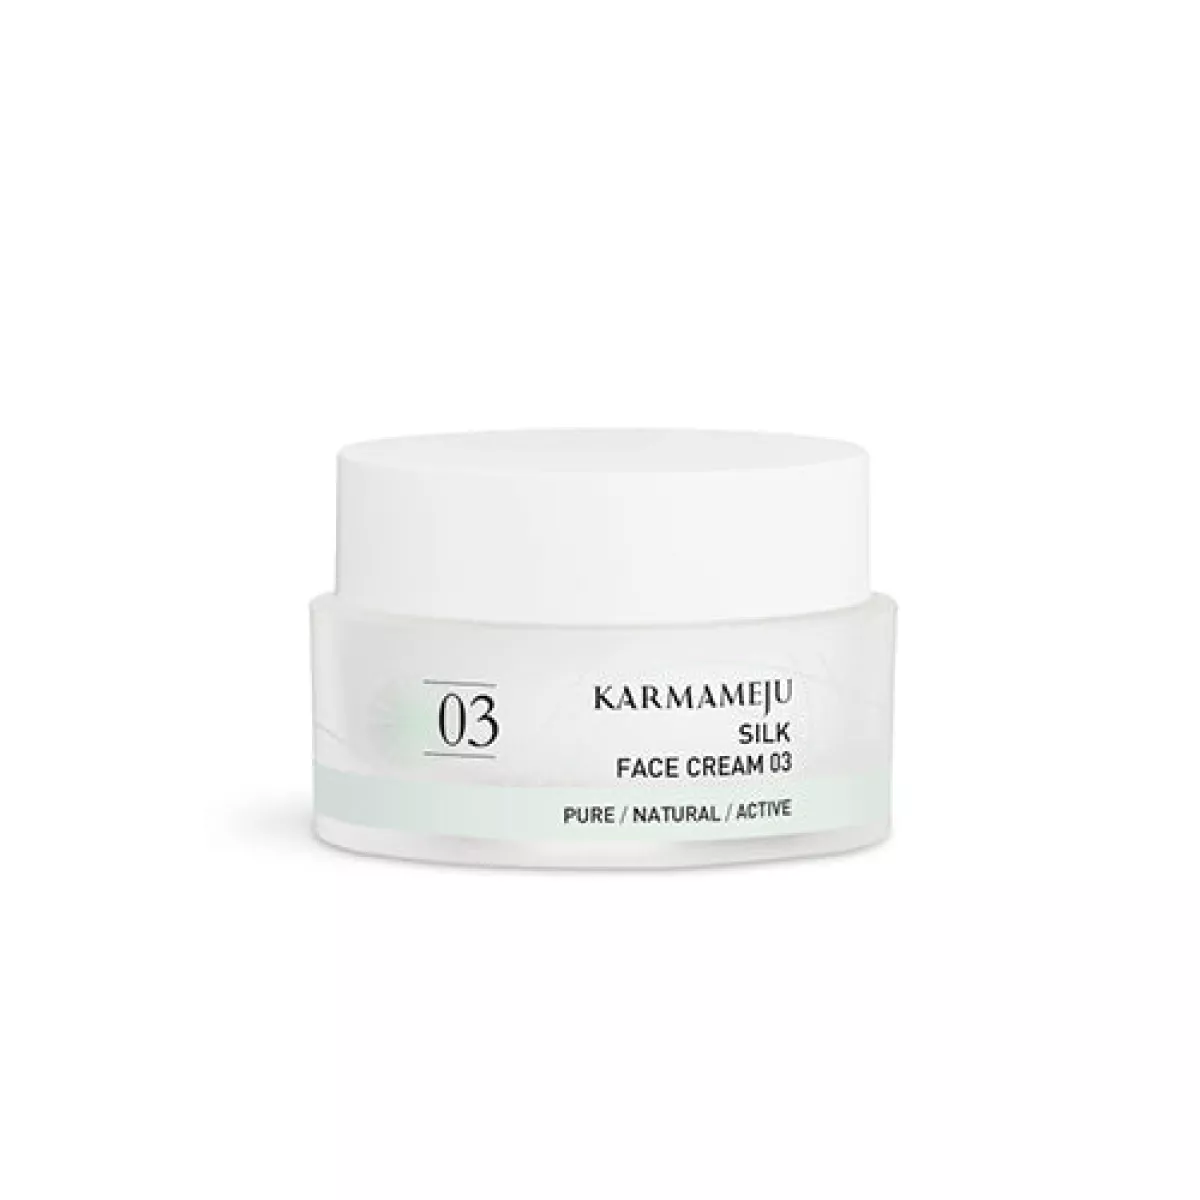 #3 - Karmameju Silk ansigtscreme 03, 50 ml